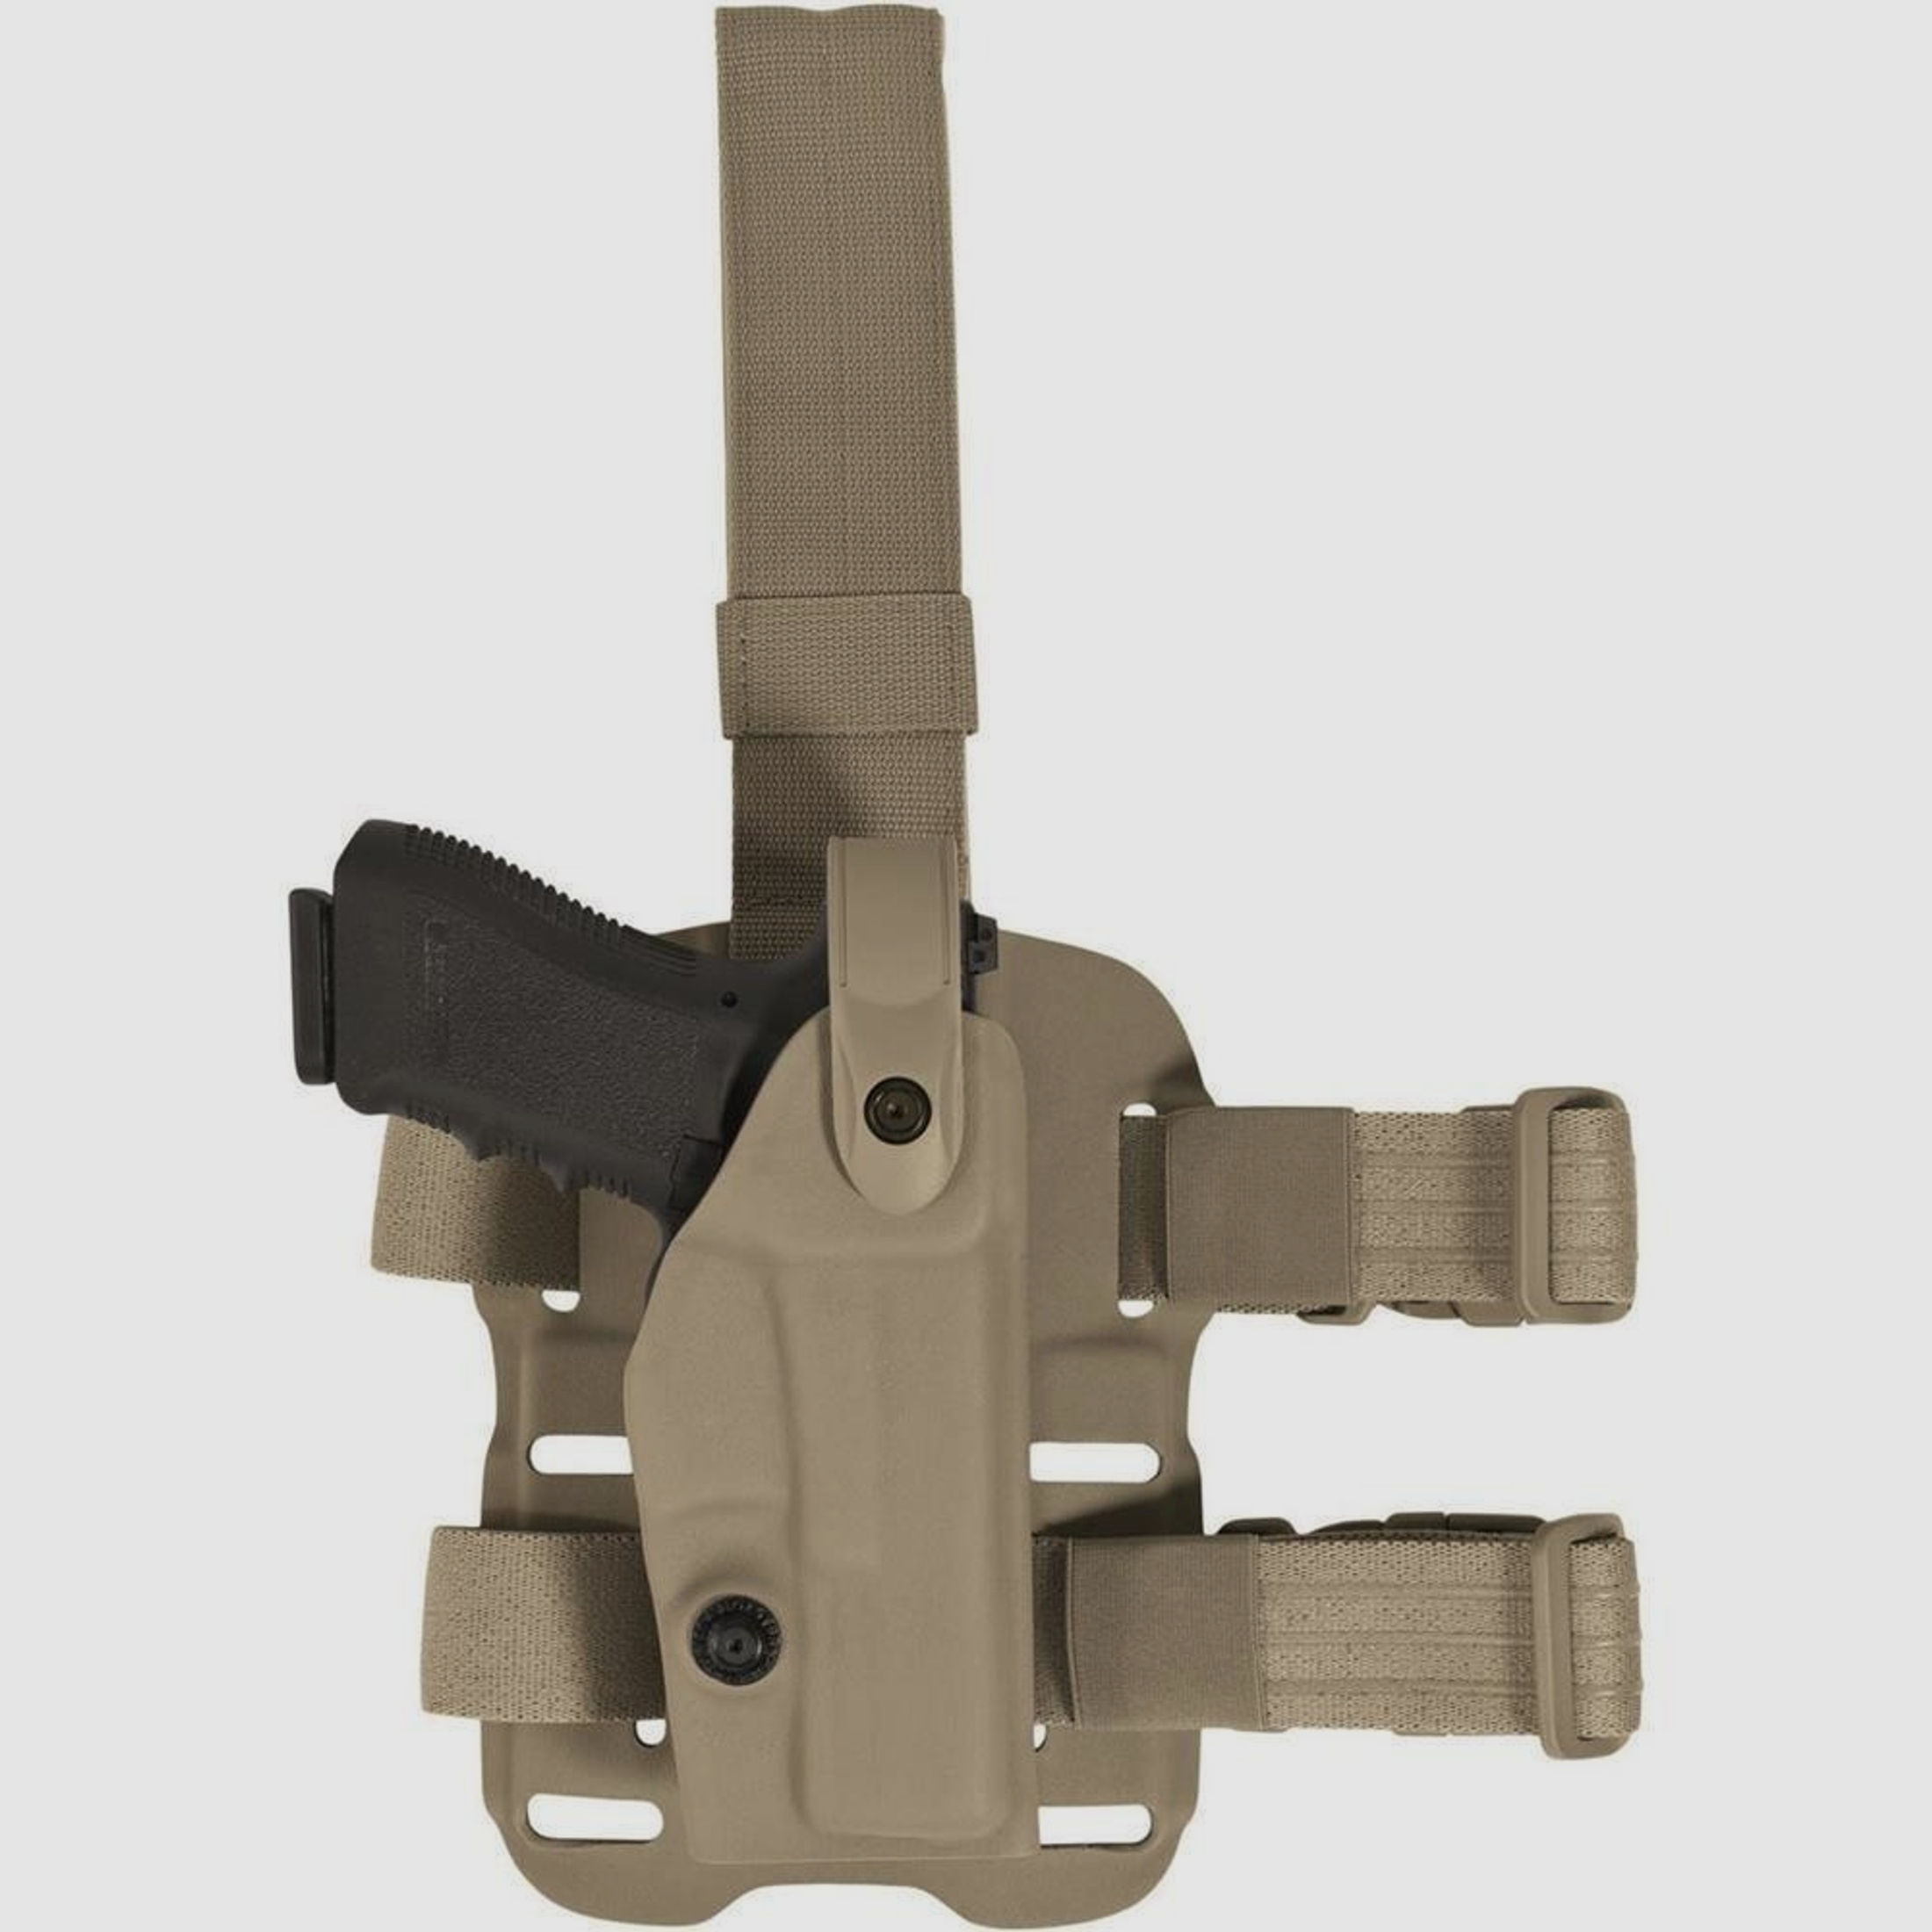 Modulares Oberschenkelholster "VETERAN" mit Sicherheitslevel II Walther P99Q / PPQ-OD Green-Linkshänder